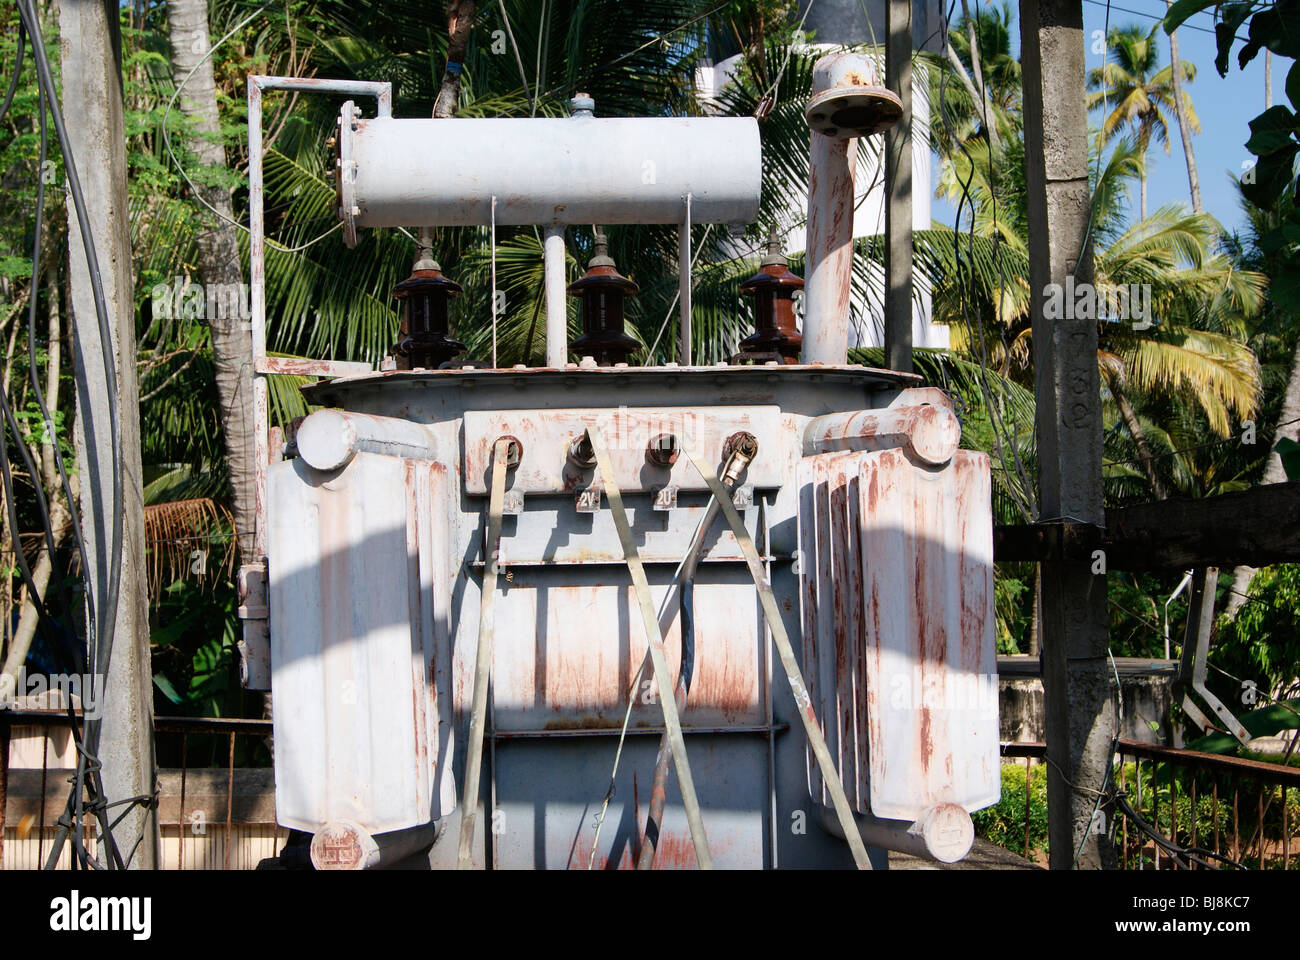 Gefährlichen alten Step-up Transformator befindet sich im öffentlichen Bereich in Indien für die Verteilung von Elektrizität in ländlichen Dorf Bereiche Stockfoto